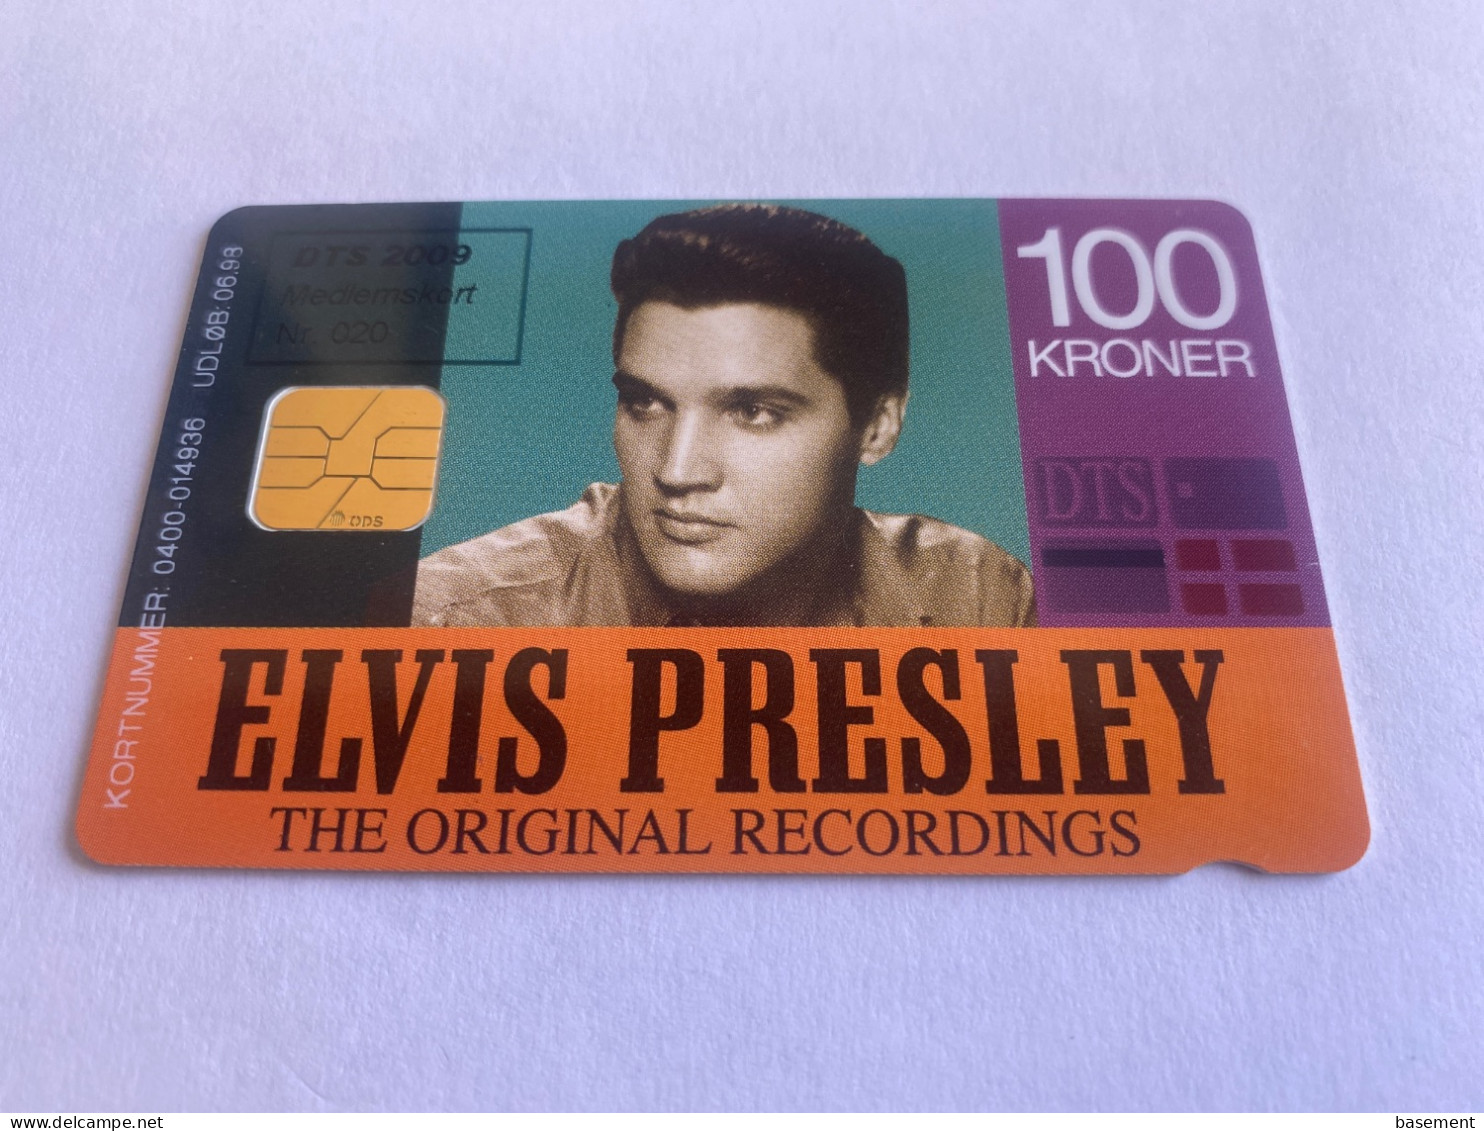 1:013 - Denmark DTS 2009 Membercard Elvis Presley - Denmark